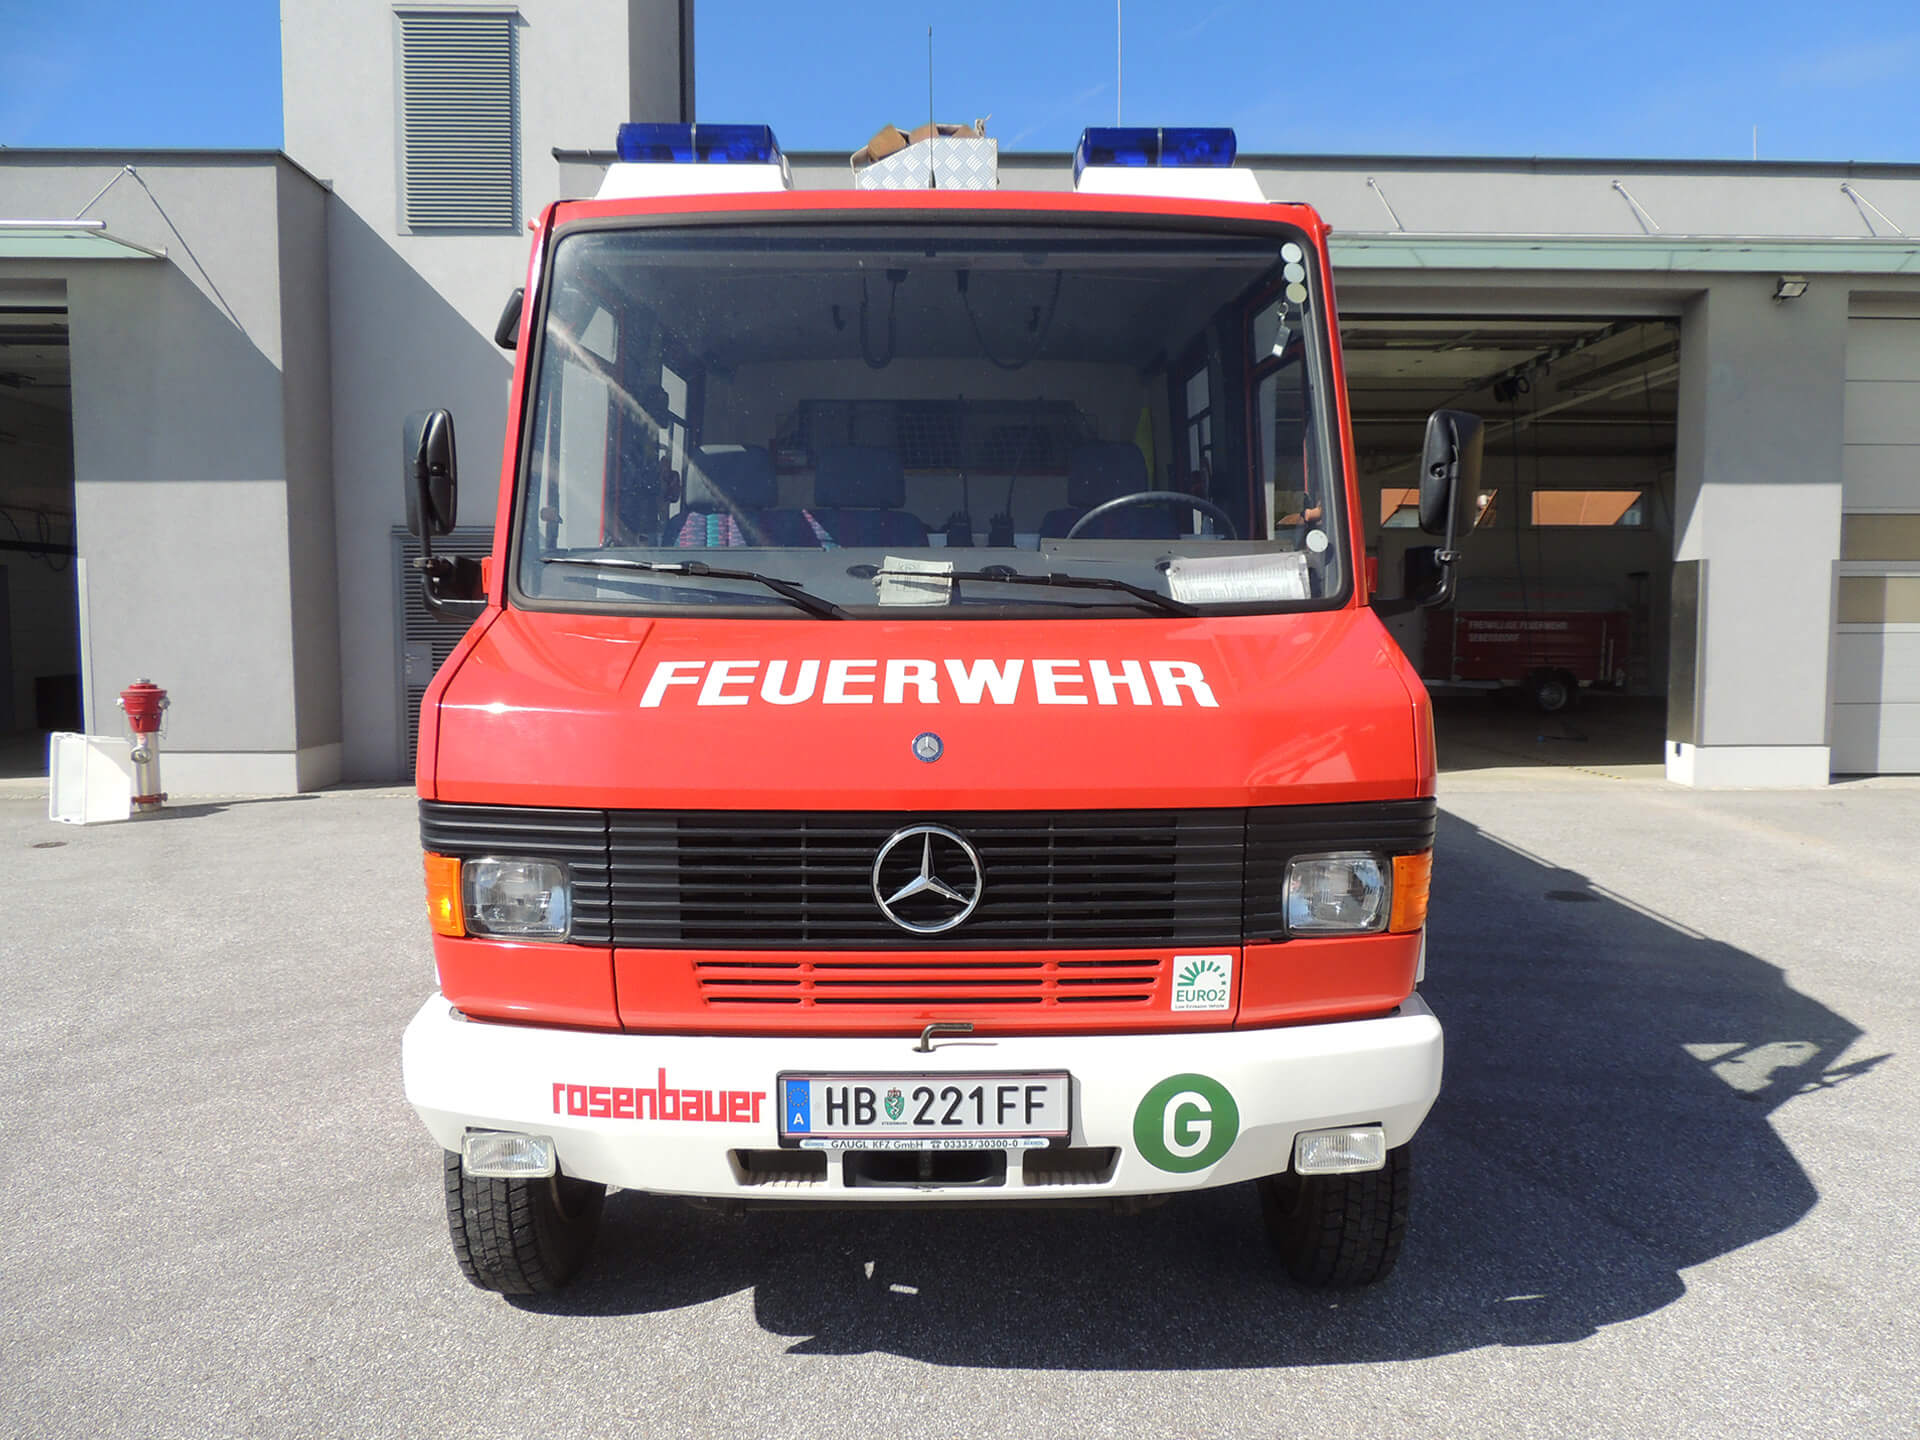 Freiwillige_Feuerwehr_Sebersdorf_LFA_02